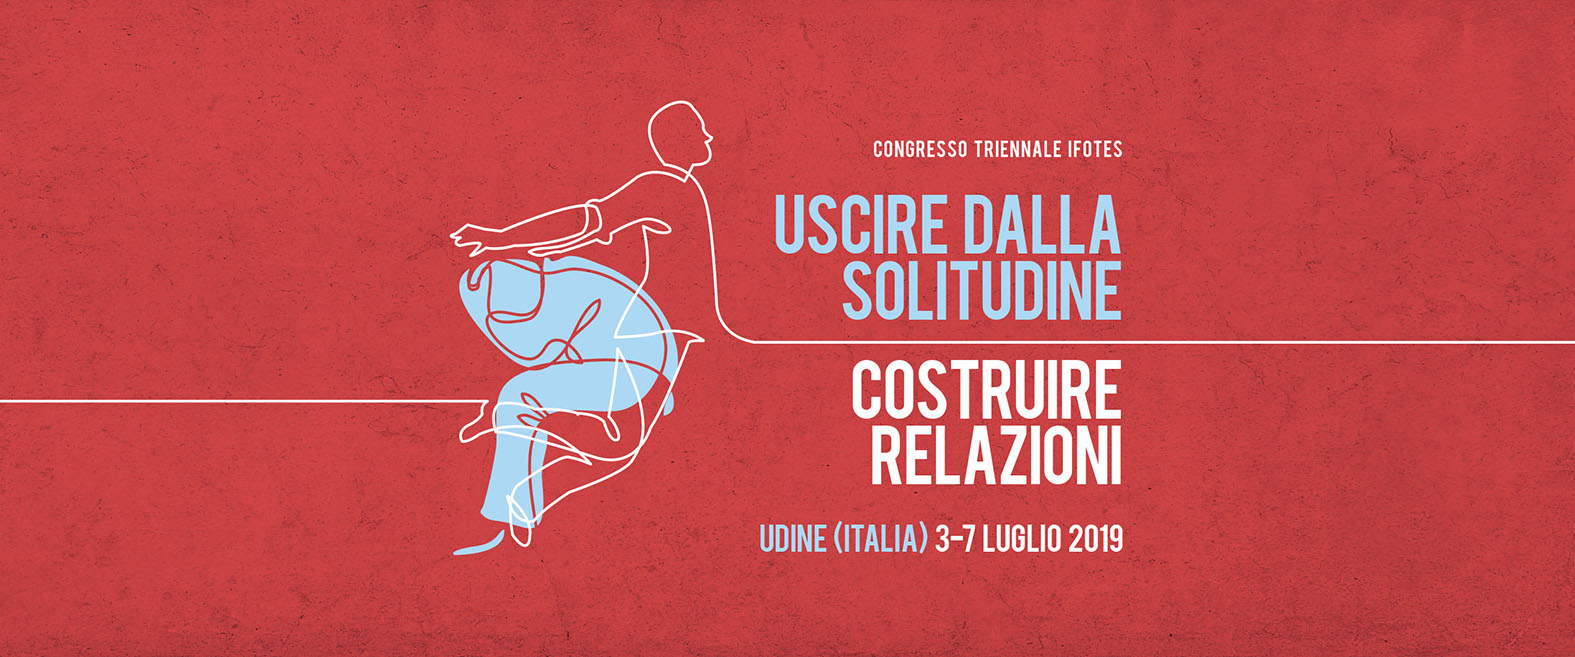 Al momento stai visualizzando Congresso internazionale di Ifotes a Udine dal 3 al 7 luglio